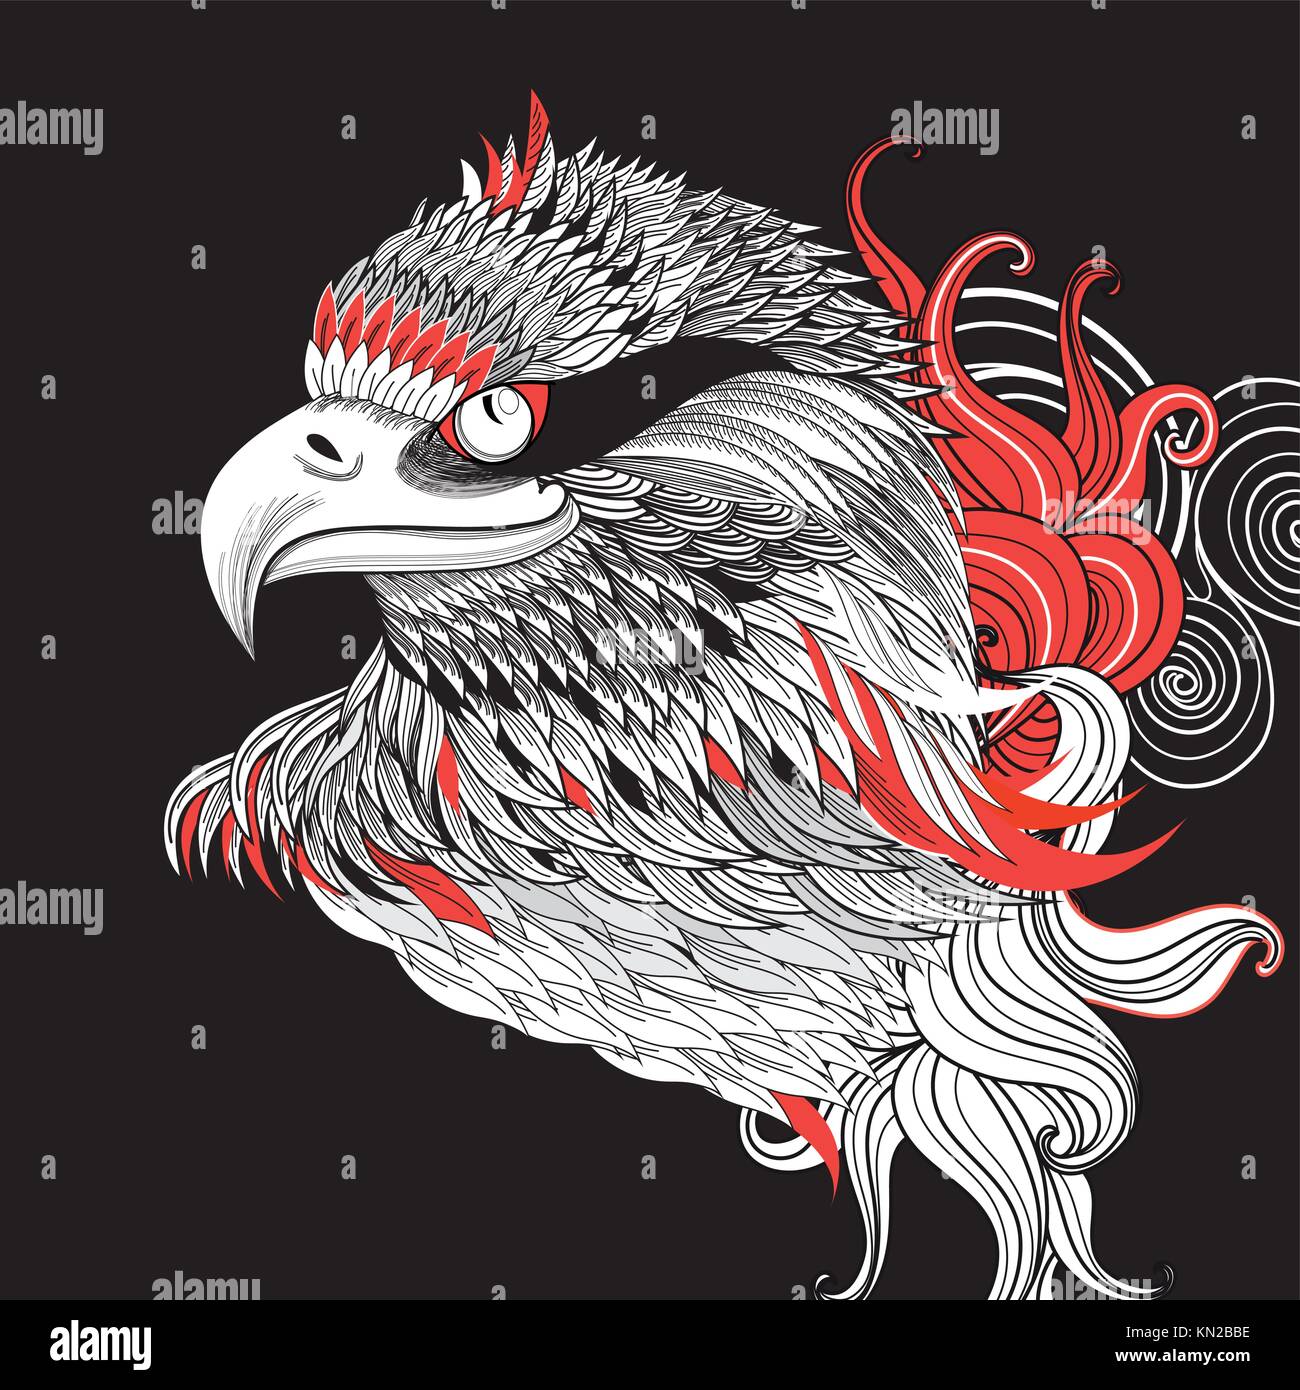 Grafik schöne Portrait von einem Adler auf einem dunklen Hintergrund Stock Vektor